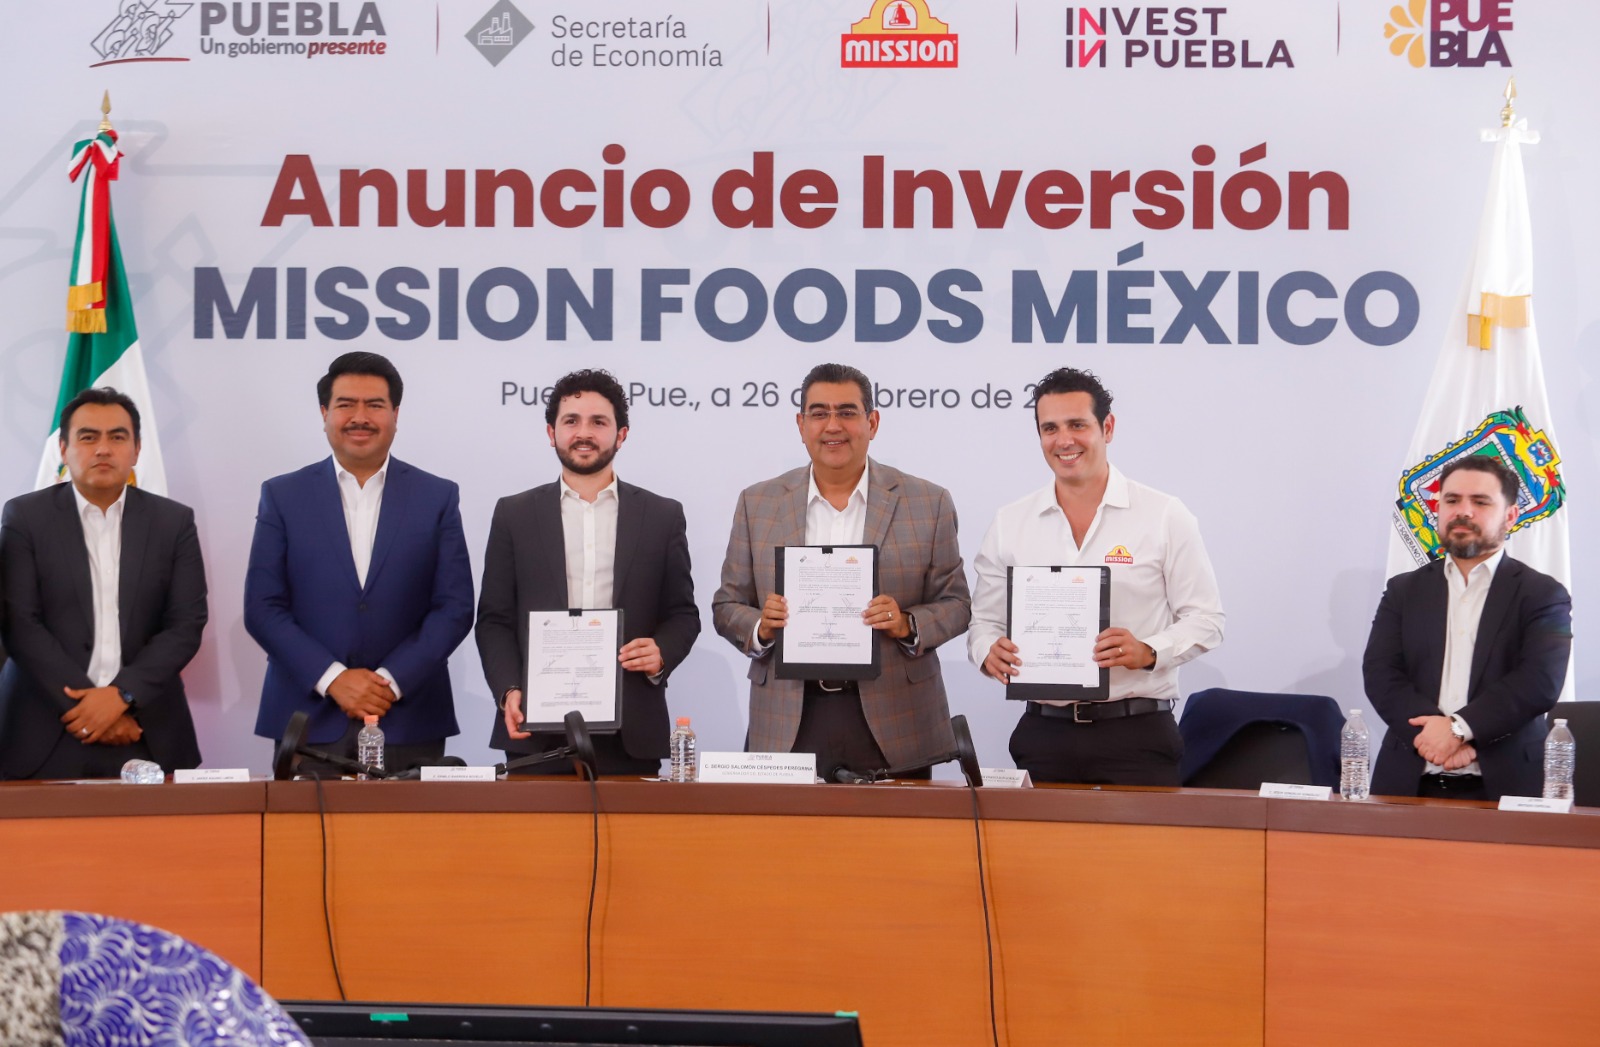 Video desde Puebla: Sergio Salomón anunció inversión de Mission Foods por 791 mdp para ampliar la planta